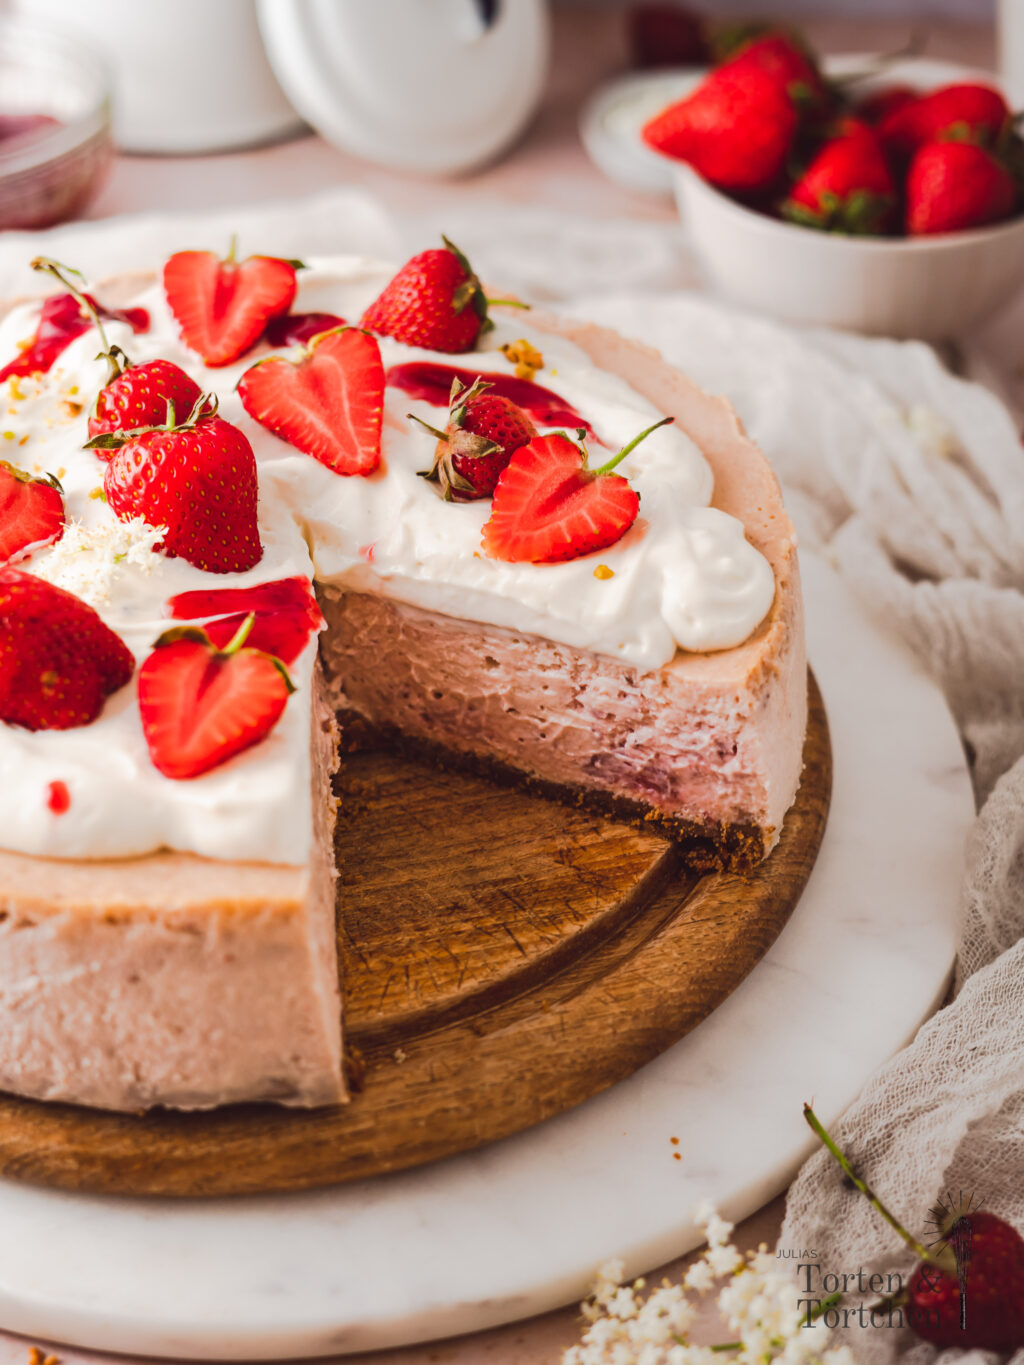 Entdecke ein einfaches Rezept für einen super cremigen Erdbeer Cheesecake nach New York Cheesecake Art. Dieser köstliche Käsekuchen erhält seinen charmanten rosa Farbton durch pürierte Erdbeeren. Die sahnige Haube und die frischen Erdbeeren bilden eine schöne Verzierung. Einfach die perfekte Kombination aus fruchtiger Erdbeere und sahniger Cheesecakemasse. Damit schmeckt dieser Käsekuchen einfach wie der bester Erdbeer Milkshake! #Erdbeeren #Backen #Käsekuchen #Cheesecake